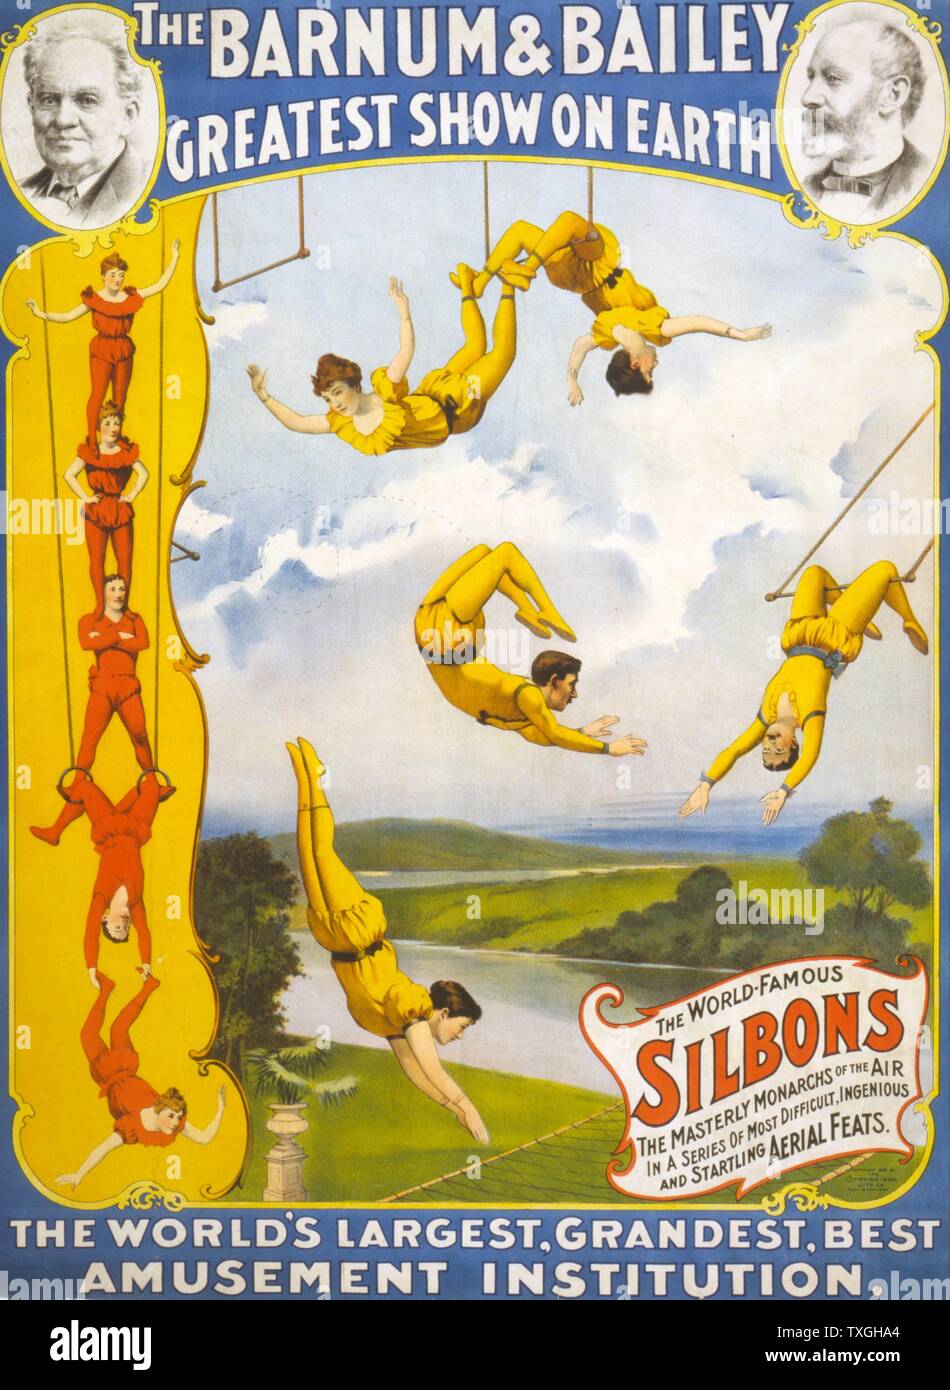 El Barnum & Bailey mayor espectáculo de la tierra c1896 : Circo póster trapecistas. Foto de stock